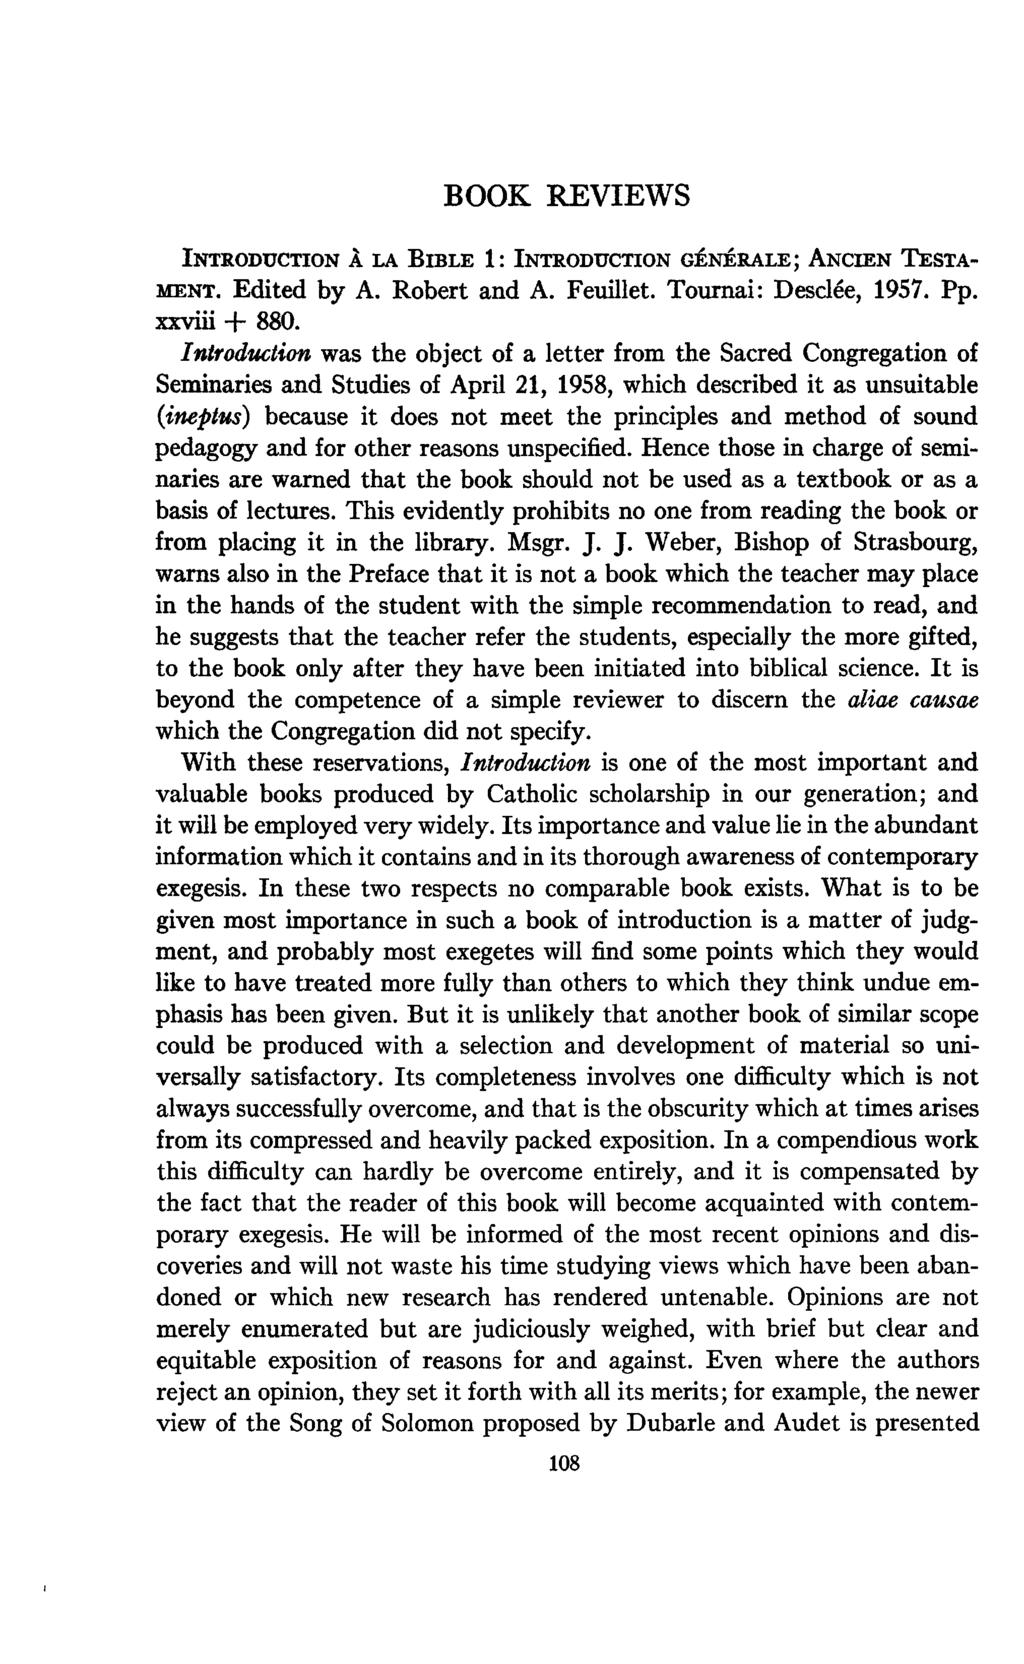 BOOK REVIEWS INTRODUCTION À LA BIBLE 1: INTRODUCTION GÉNÉRALE; ANCIEN TESTA MENT. Edited by A. Robert and A. Feuillet. Tournai: Desclée, 1957. Pp. xxviii + 880.